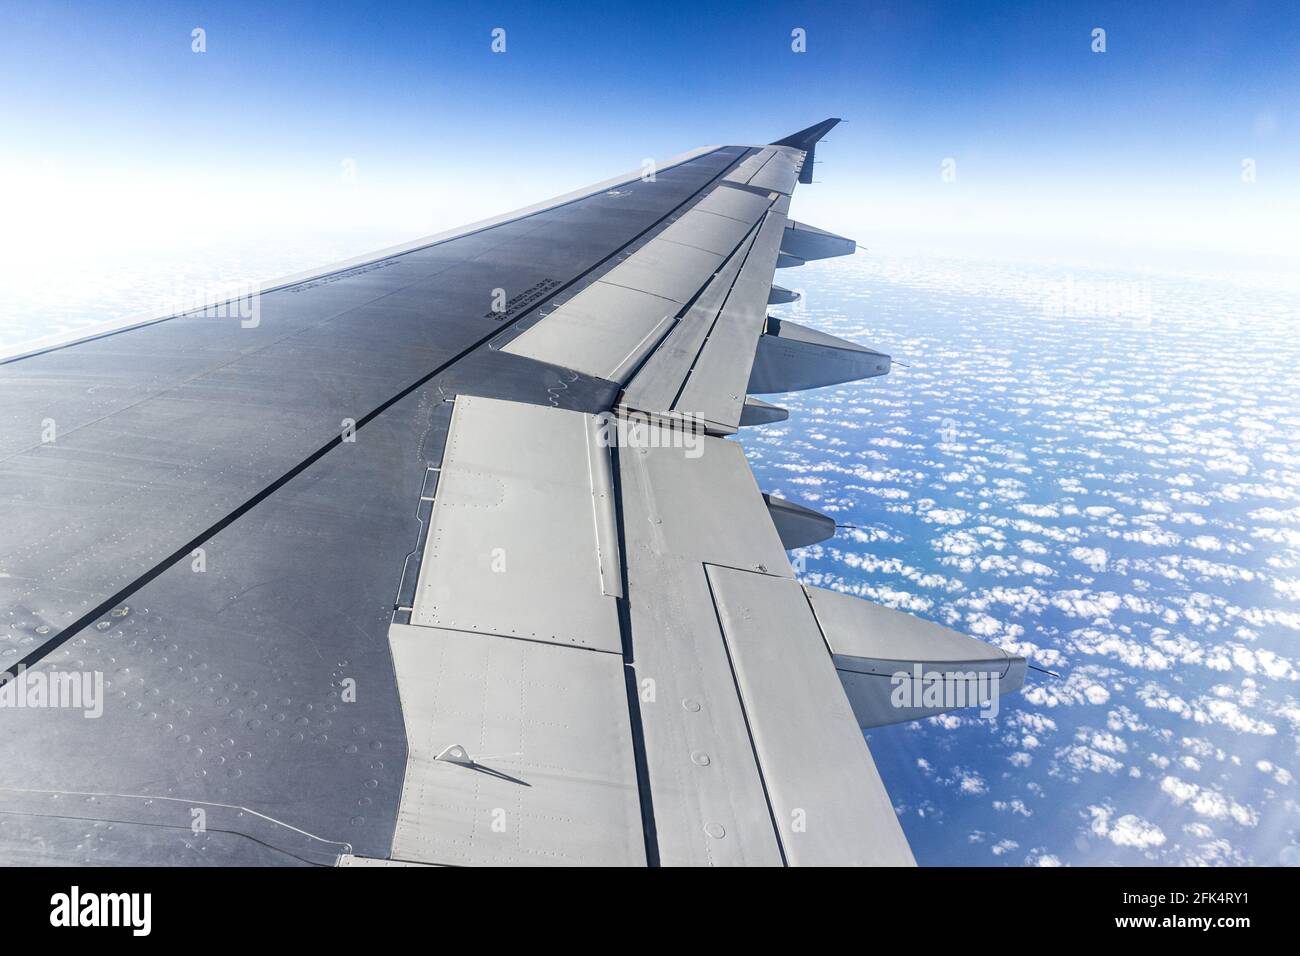 La vista desde la ventana del ala de un avión de reacción mirando hacia abajo sobre un cielo azul con suaves nubes blancas Foto de stock